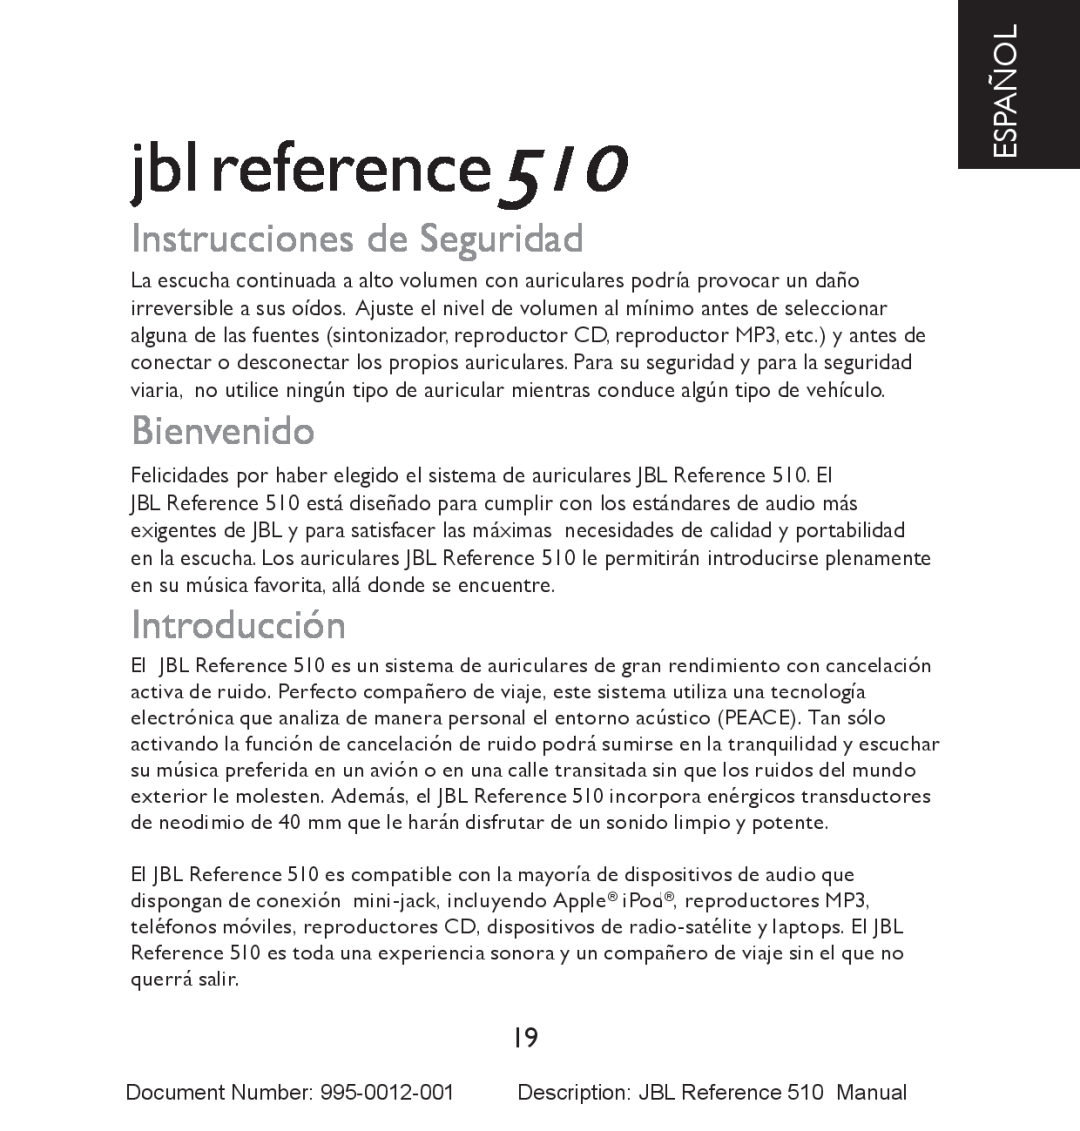 JBL manual Instrucciones de Seguridad, Bienvenido, Introducción, Español, jbl reference510 